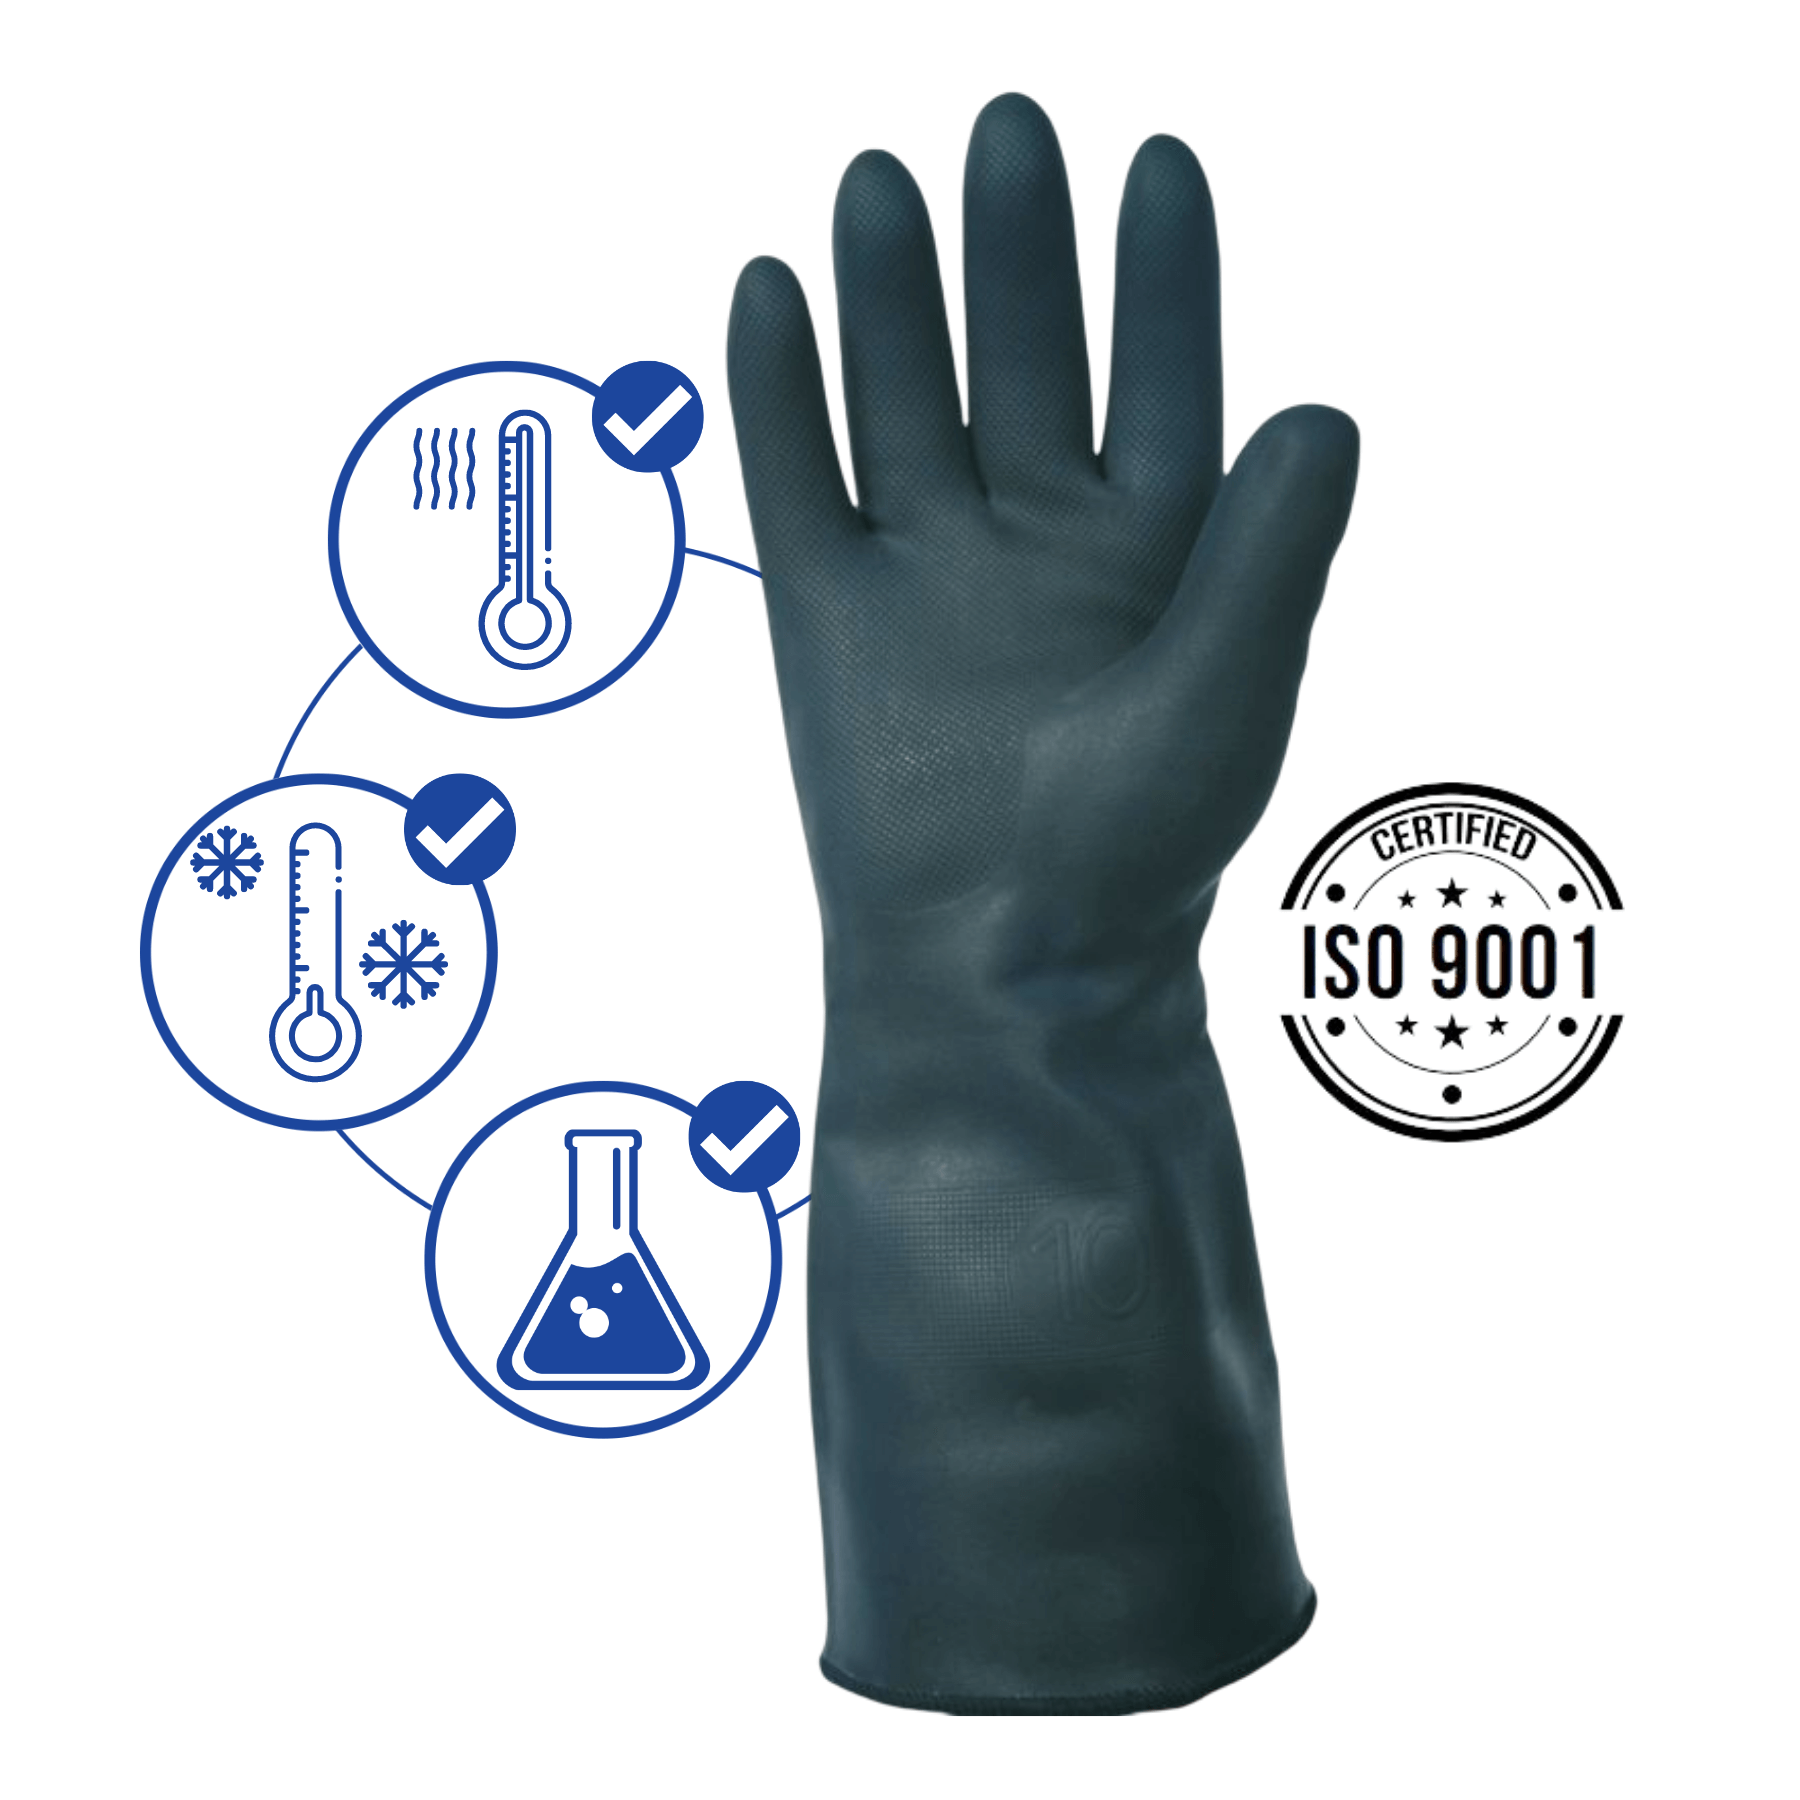 Quelle matière pour les gants anti-chaleur en cuisine